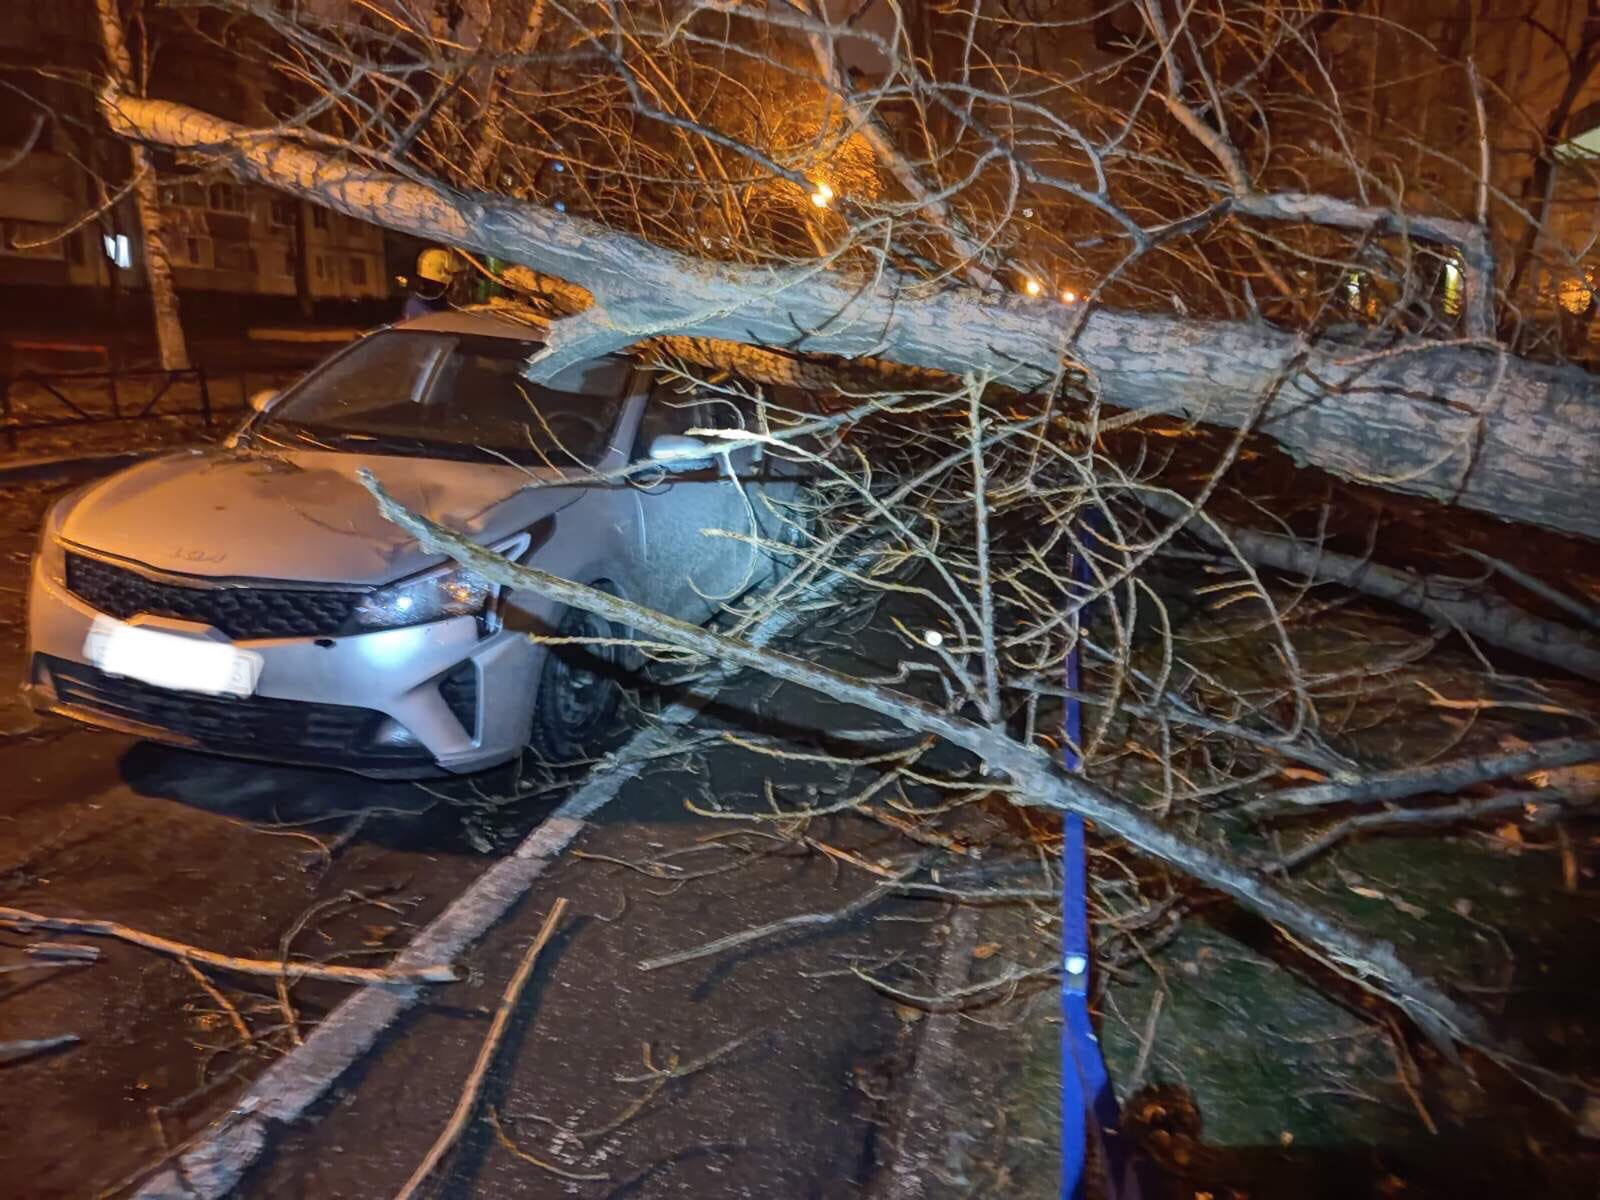 Новости тольятти сегодня происшествия свежие события. Дерево упало от порыва ветра на машину. Ураган повалил деревья на машины. Дерево упало на несколько машин. Упавшее дерево на автомобиль приору.